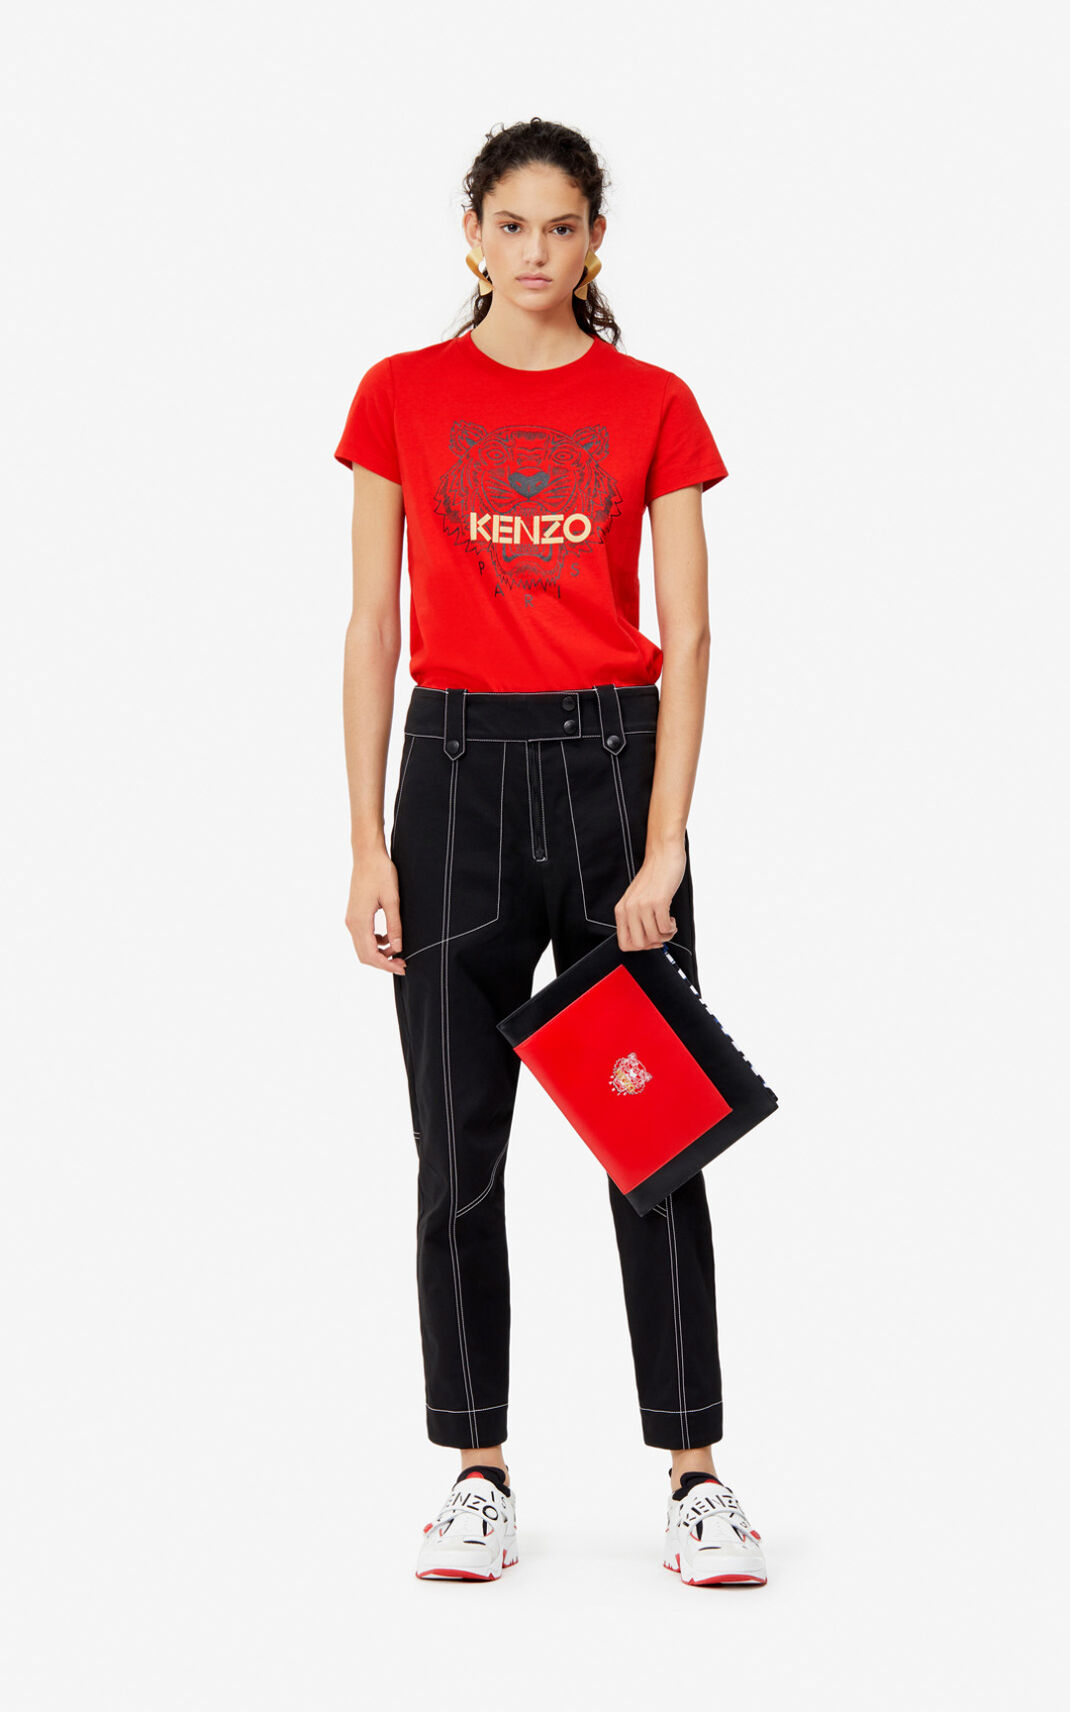 Camisetas Kenzo Tiger Mujer Rojas - SKU.0162565